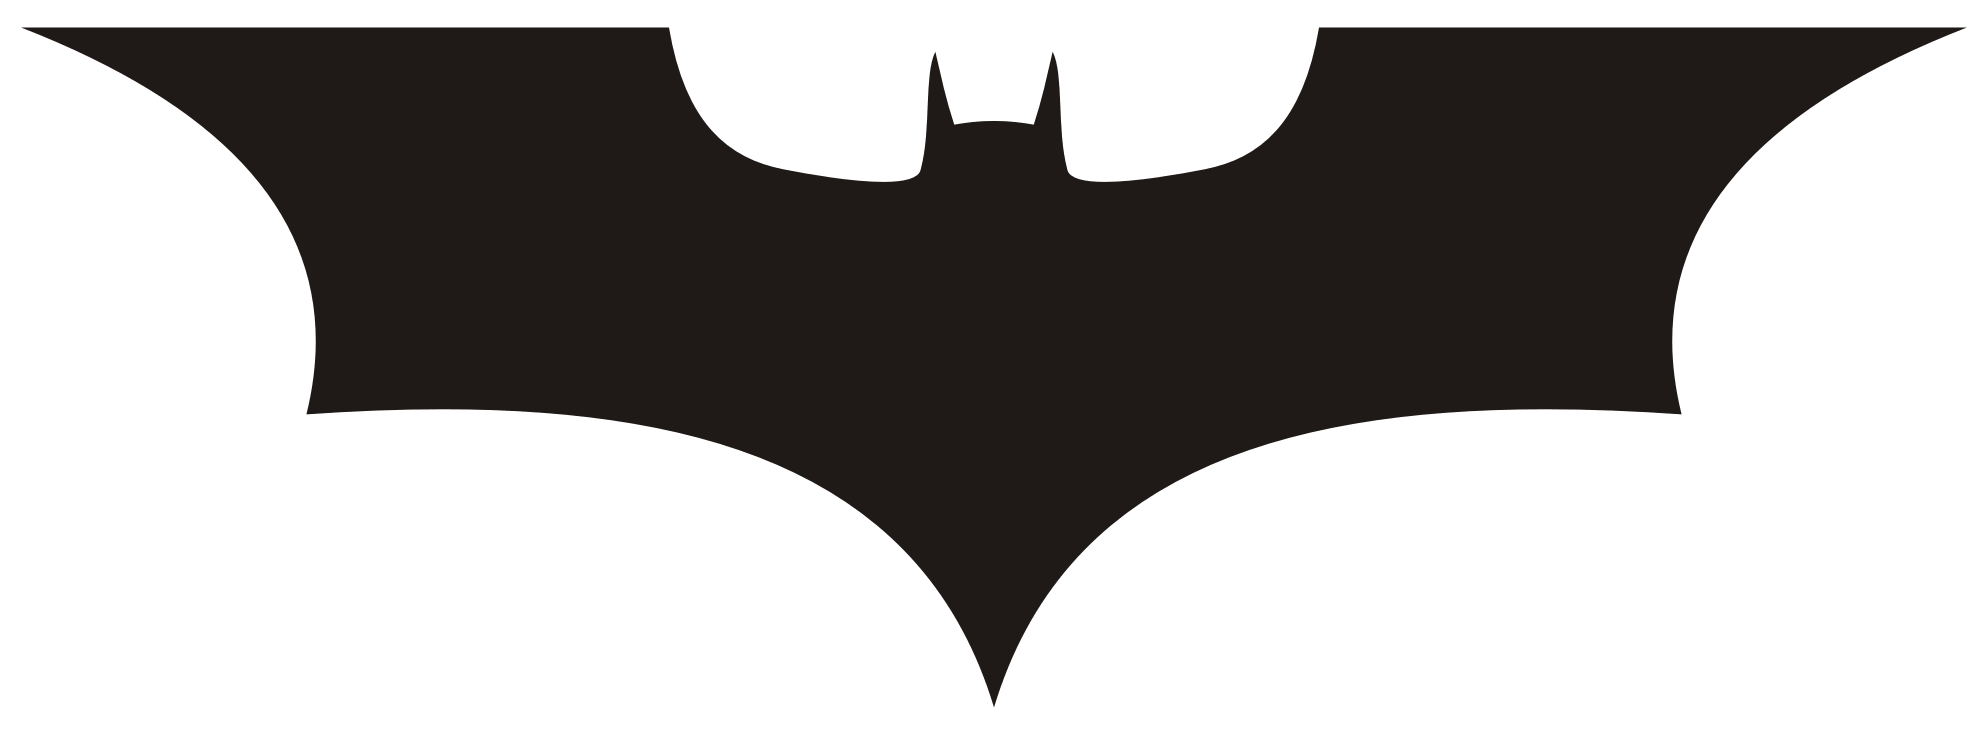 batman clipart batman symbol